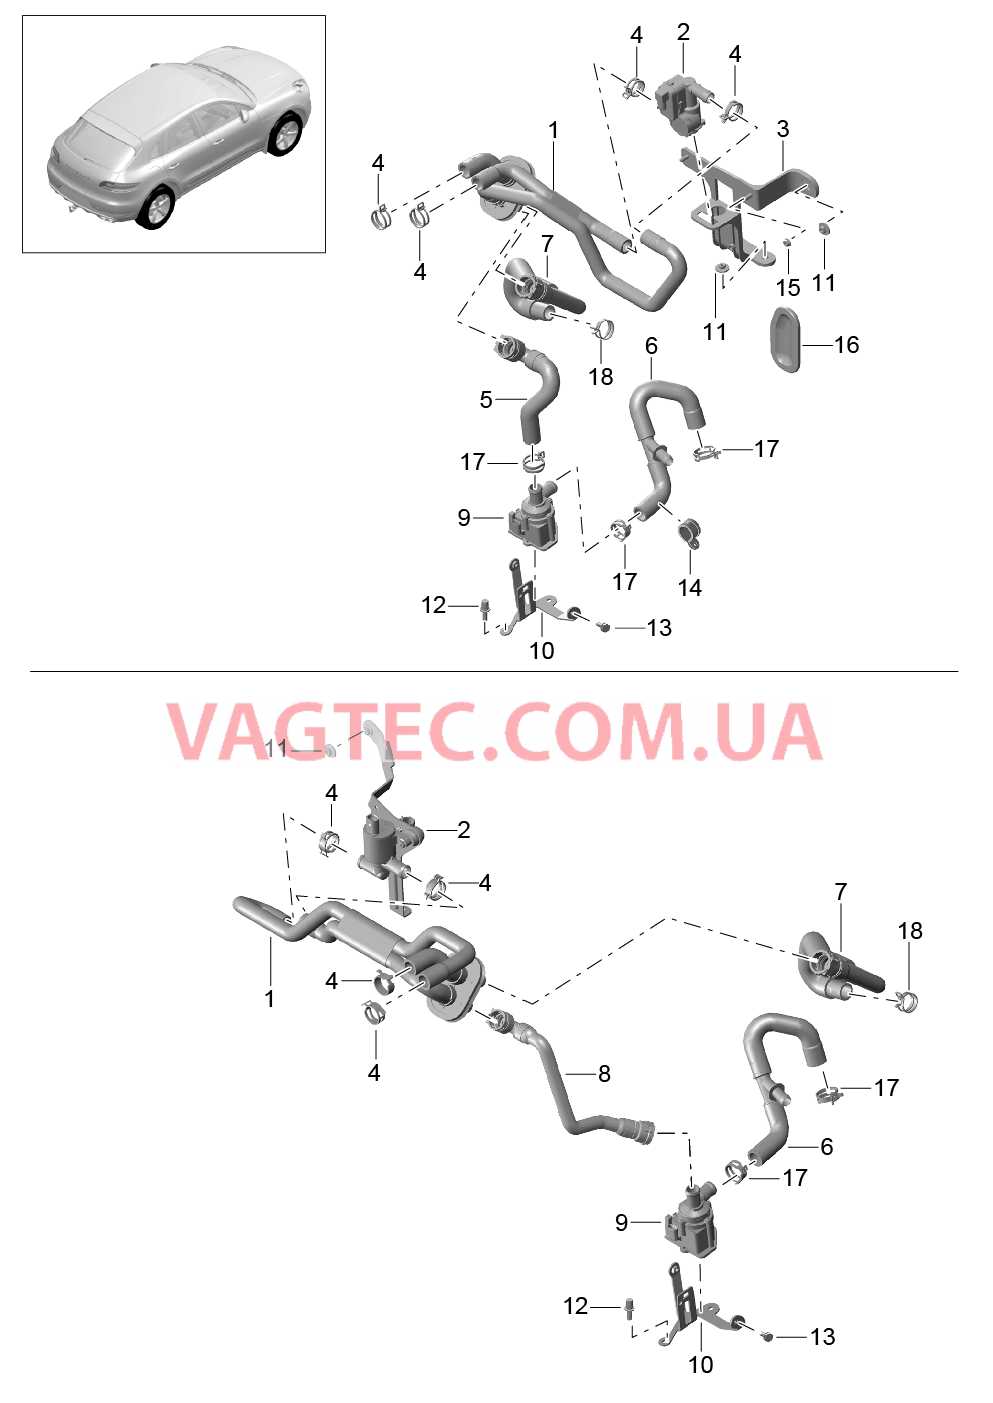 813-005 Проводка обогрева, Подвод, Задний ход, Базовый
						
						V6 BT, IDU0/DU1 для PORSCHE Macan 2014-2017